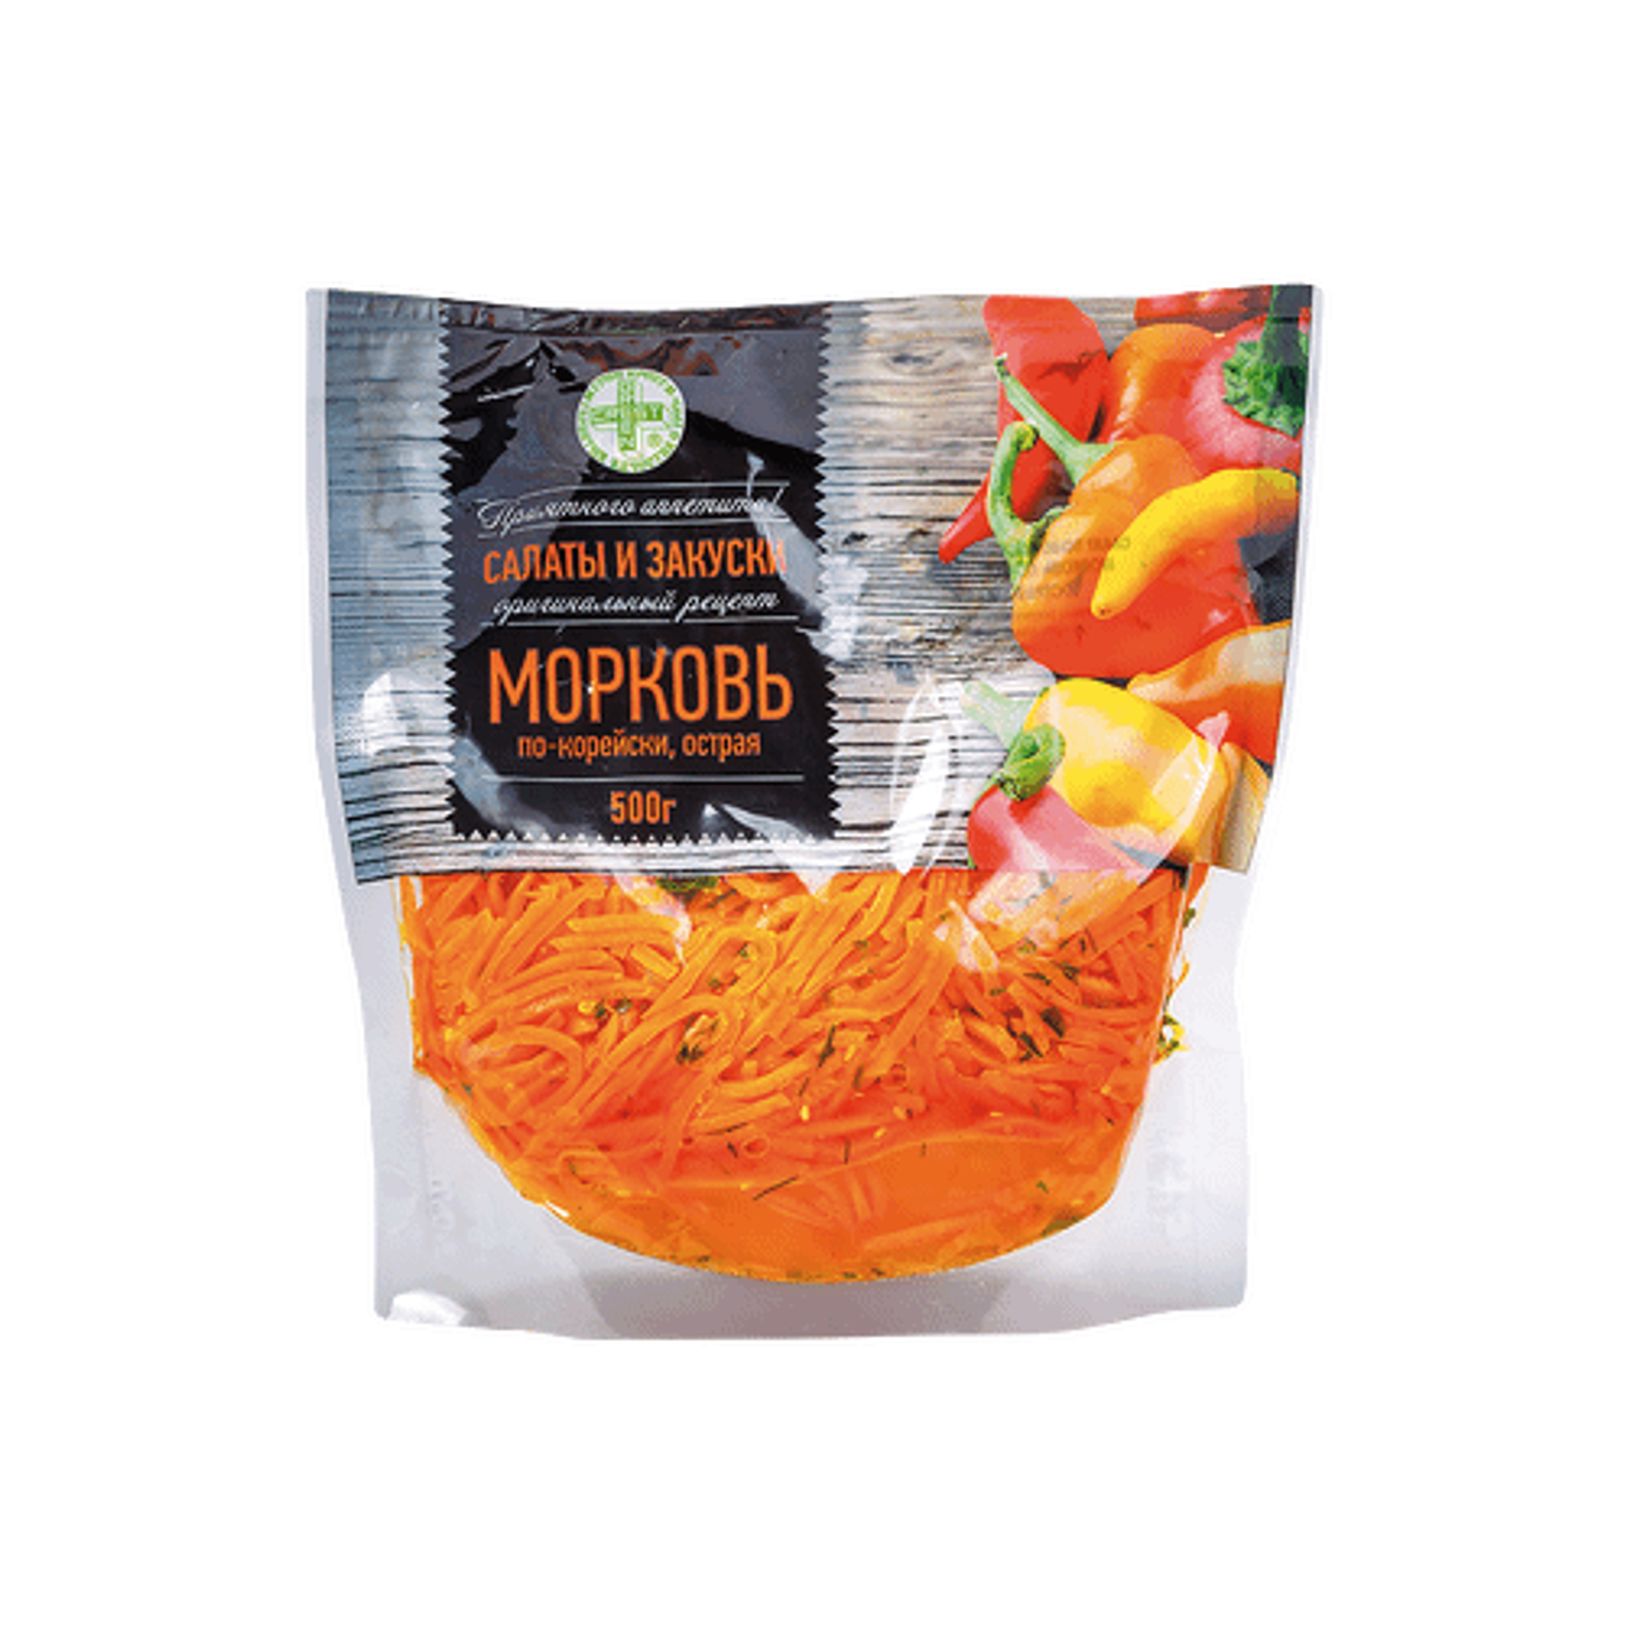 Купить салат Великоросс морковь по-корейски 500 г, цены на Мегамаркет | Артикул: 100028796058